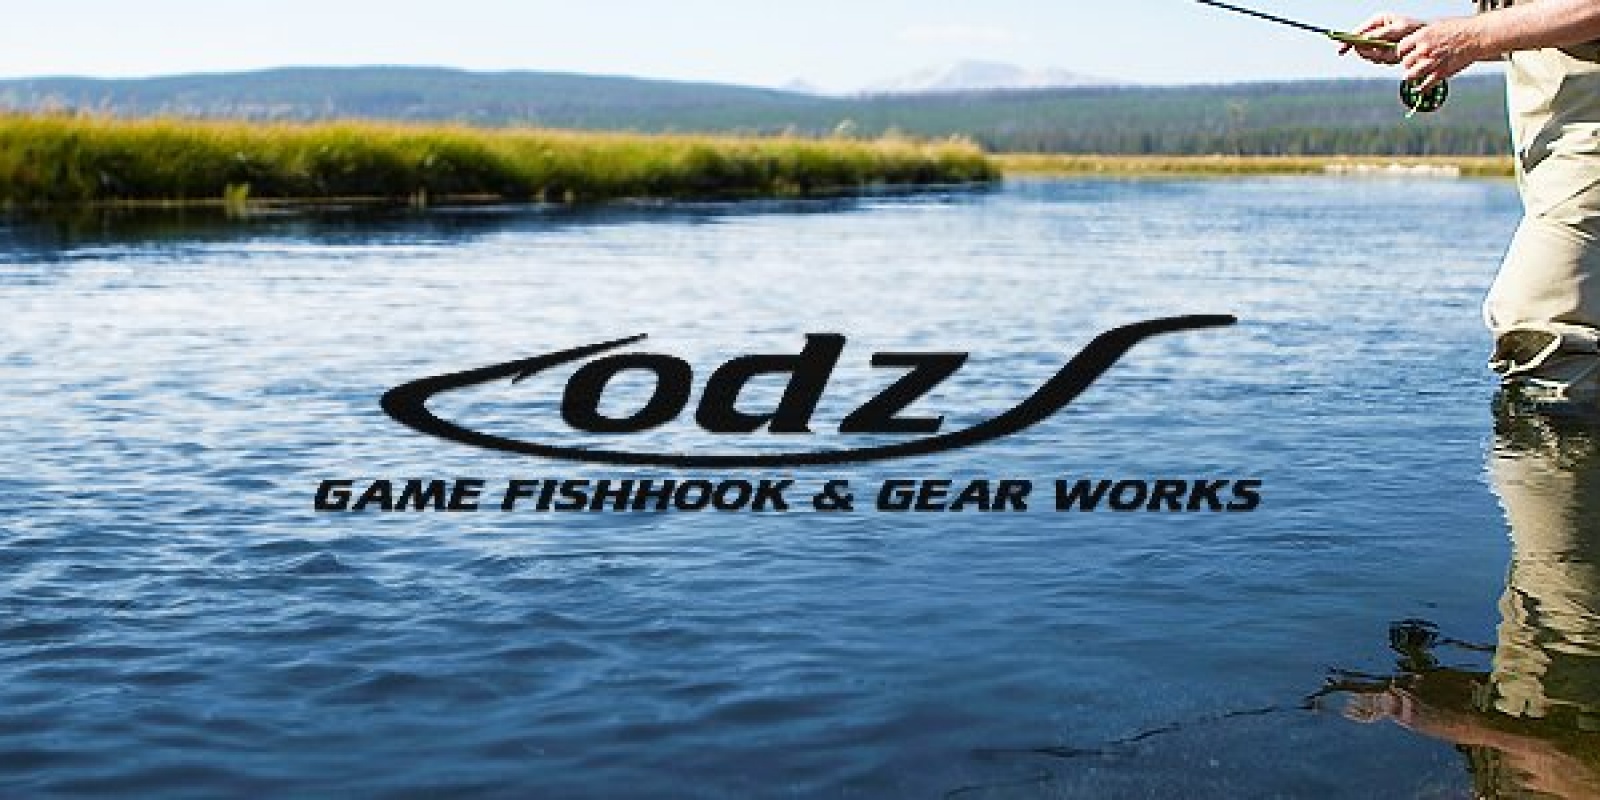 ODZ posséde une large gamme d'hameçons pour la pêche au bar, elle est l'une des marques leader dans le monde de la pêche spécialisée dans la pêche au bar. 